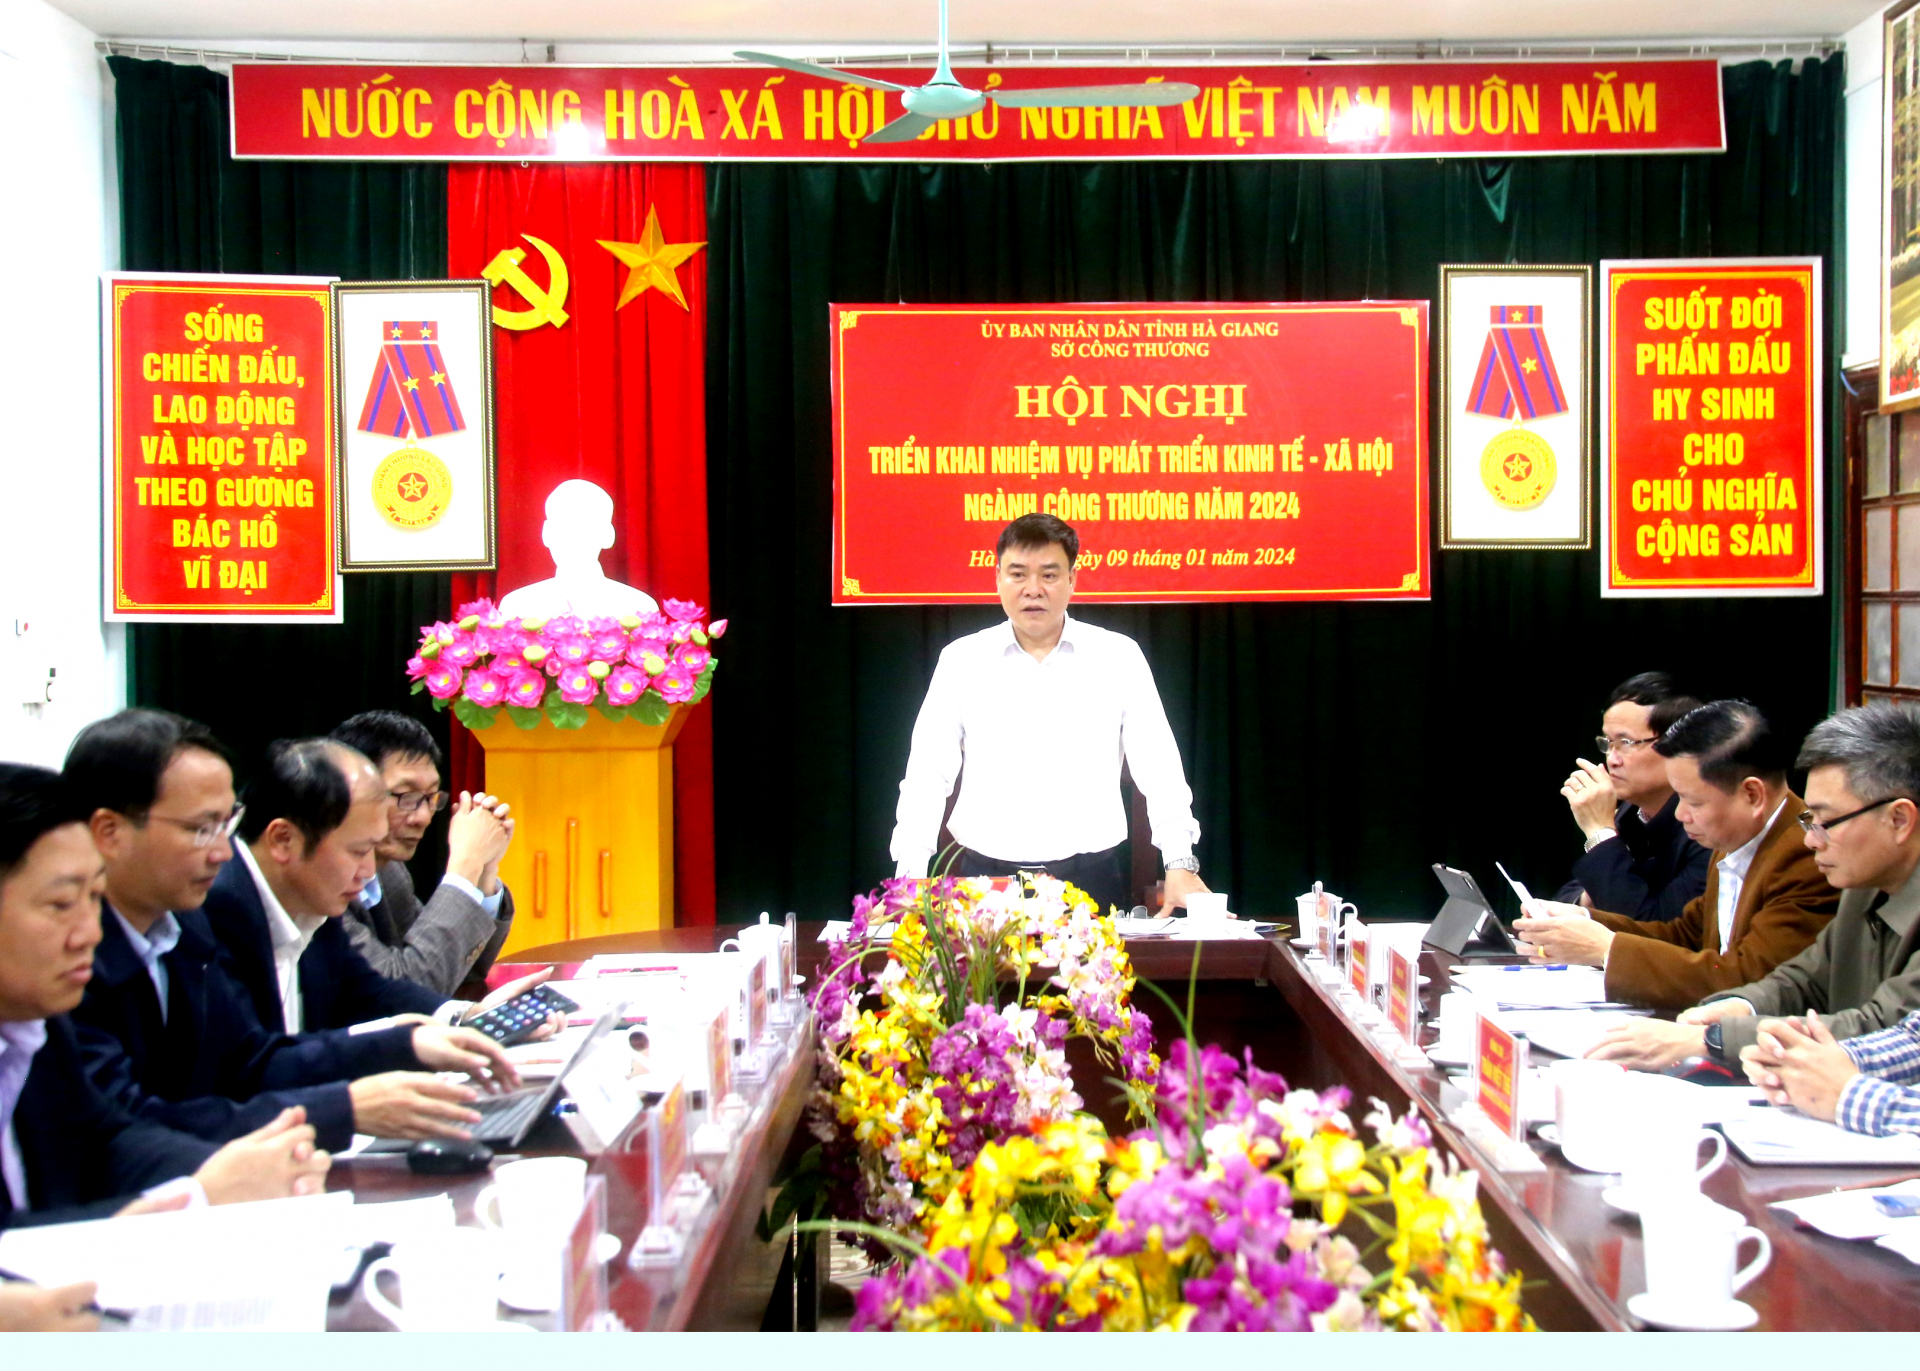 Phó Chủ tịch Thường trực UBND tỉnh Hoàng Gia Long phát biểu chỉ đạo hội nghị.